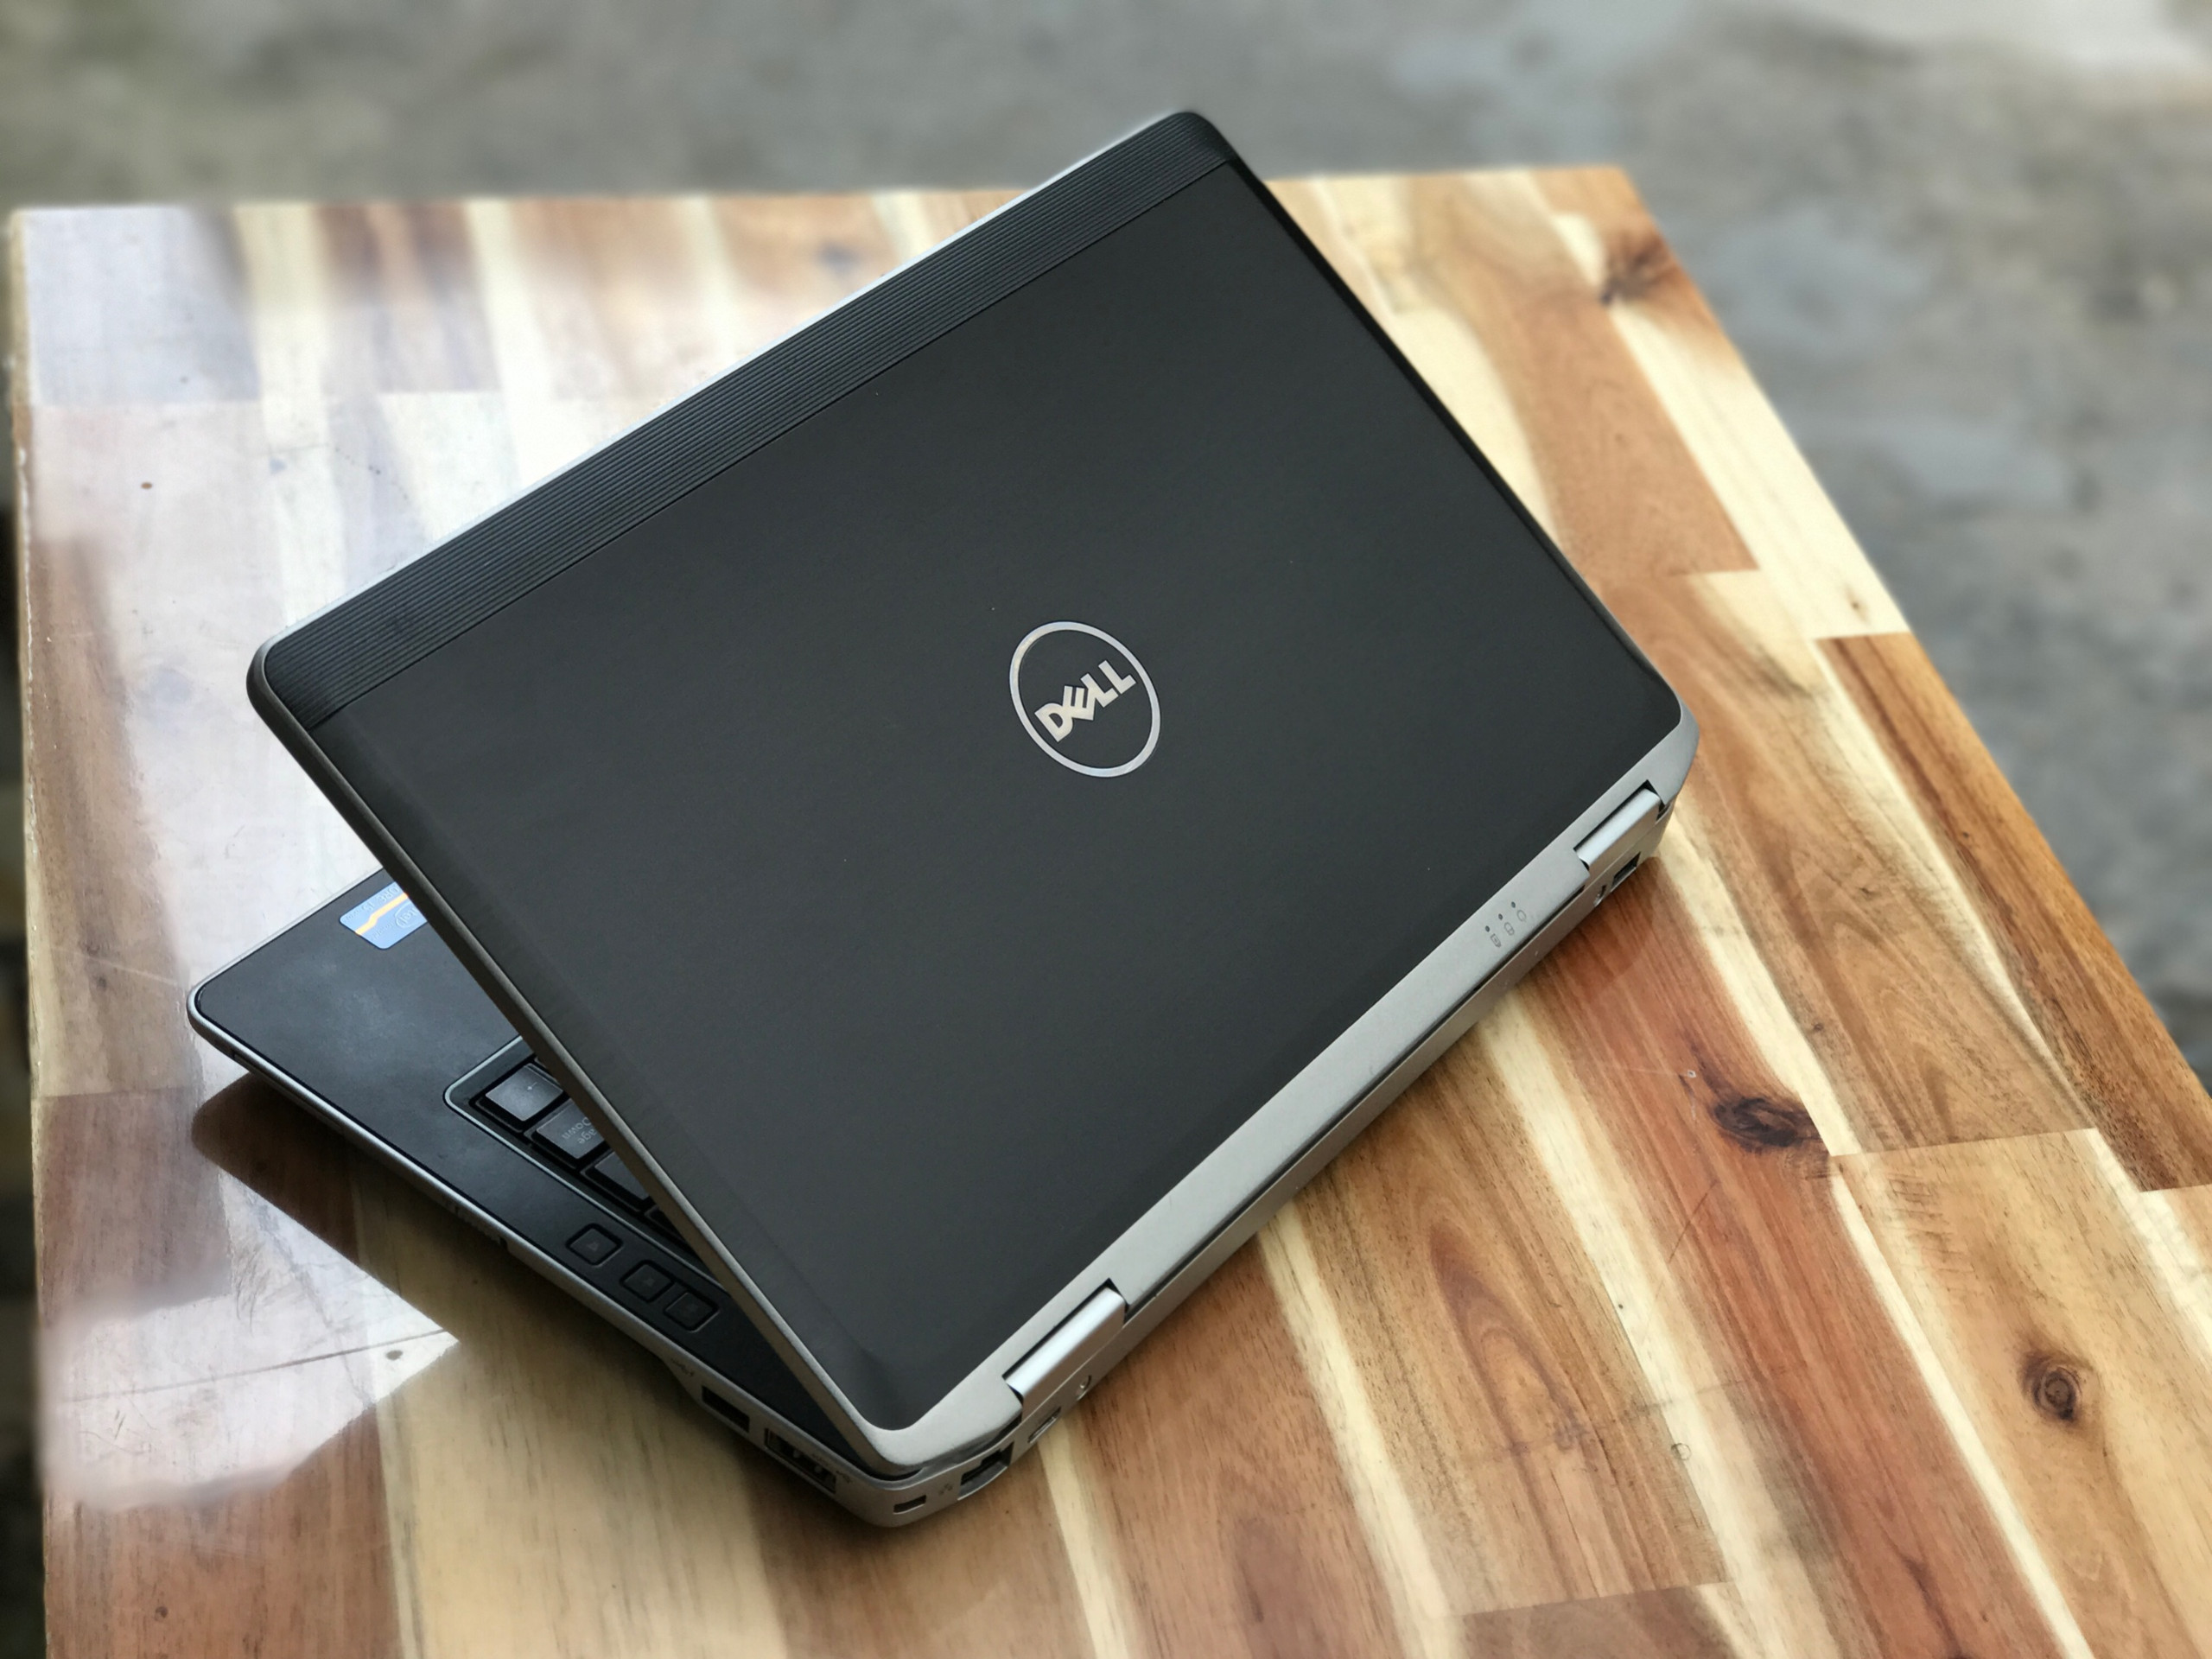 Laptop Dell Latitude E6430s/ i5 3330M/ 4 - 16G/ 500G/ 14in/ Vga HD4000/ Siêu Bền/ Giá rẻ